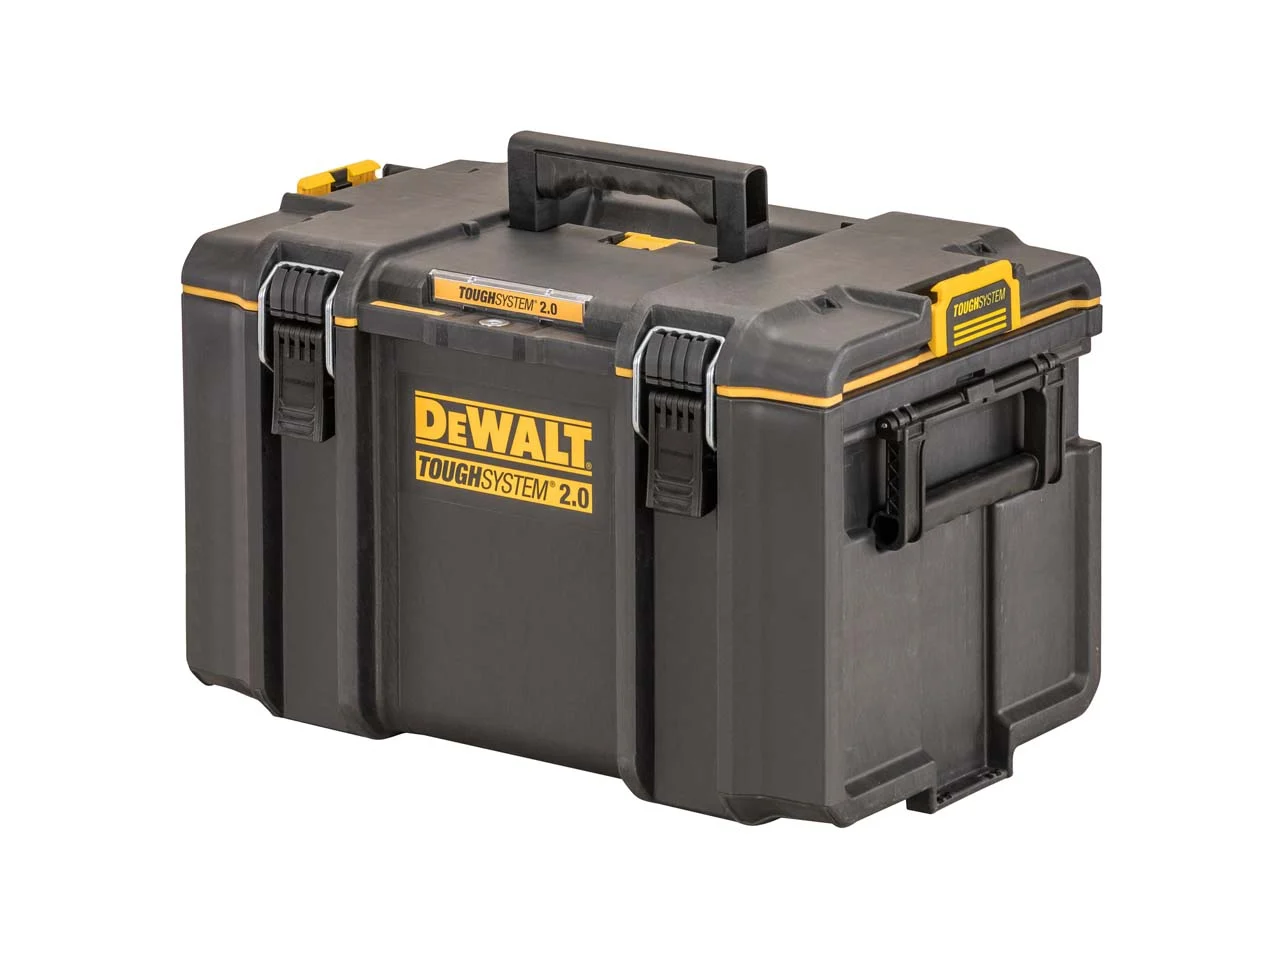 DeWalt DWST1-70706 T-Stak IV Tool Storage Box with 2-Shallow Drawers,  Yellow/Black, 7.01 cm*16.77 cm*12.28 cm